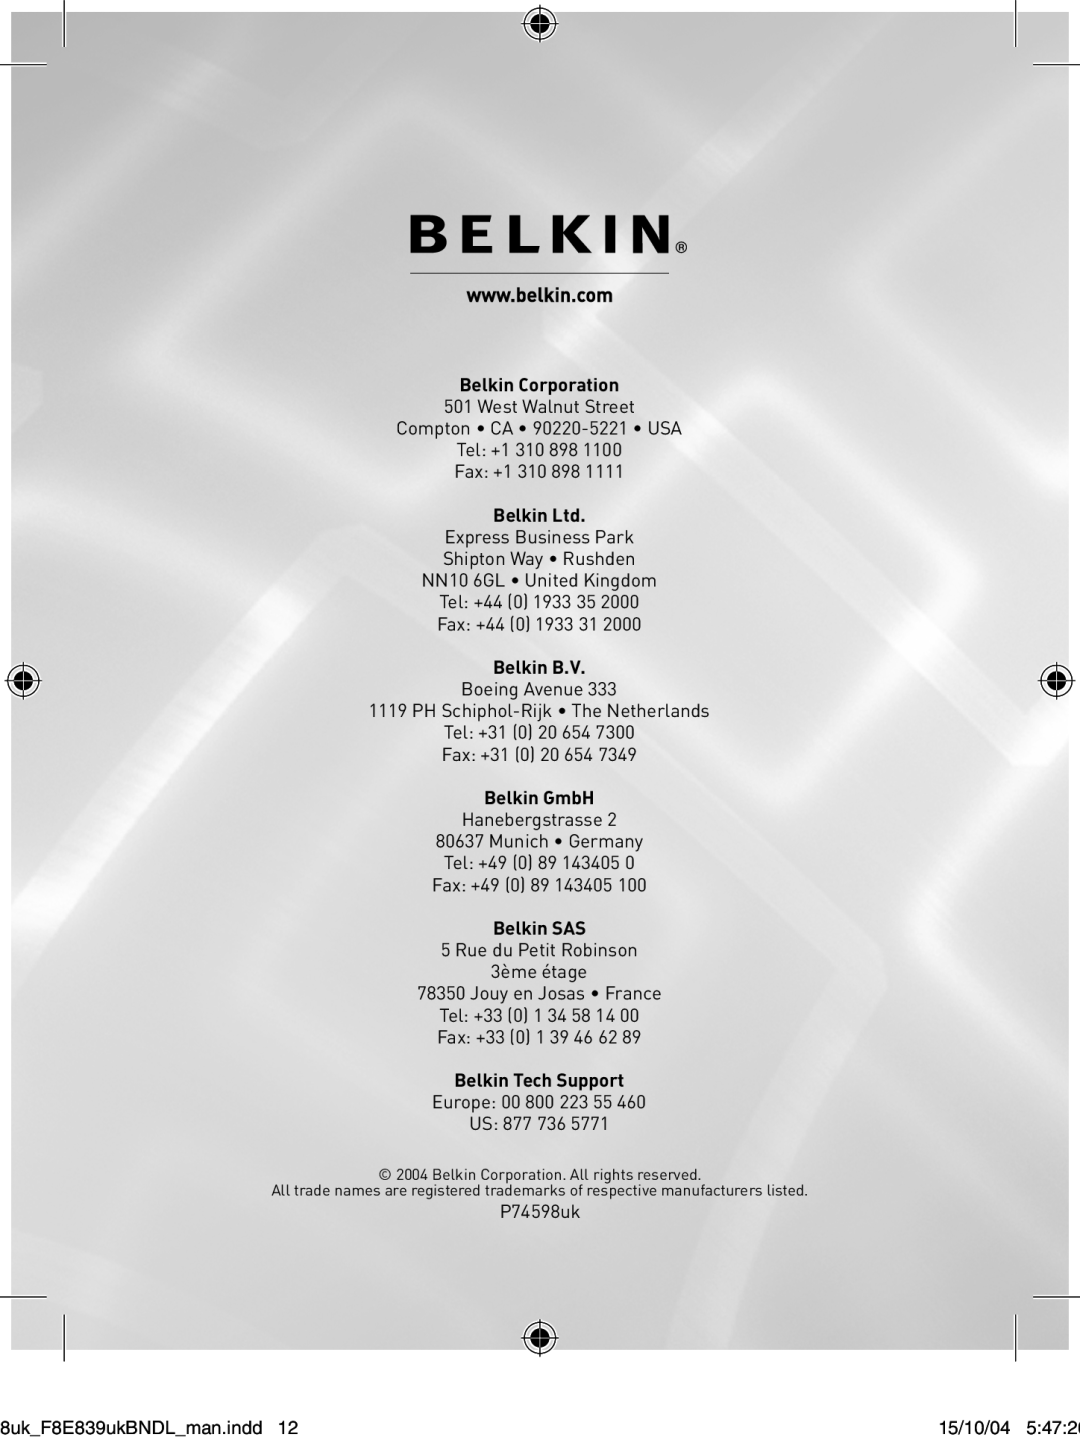 Belkin F8E839UKBNDL user manual Belkin Corporation, Belkin B.V, Belkin GmbH, Belkin SAS, Belkin Tech Support 